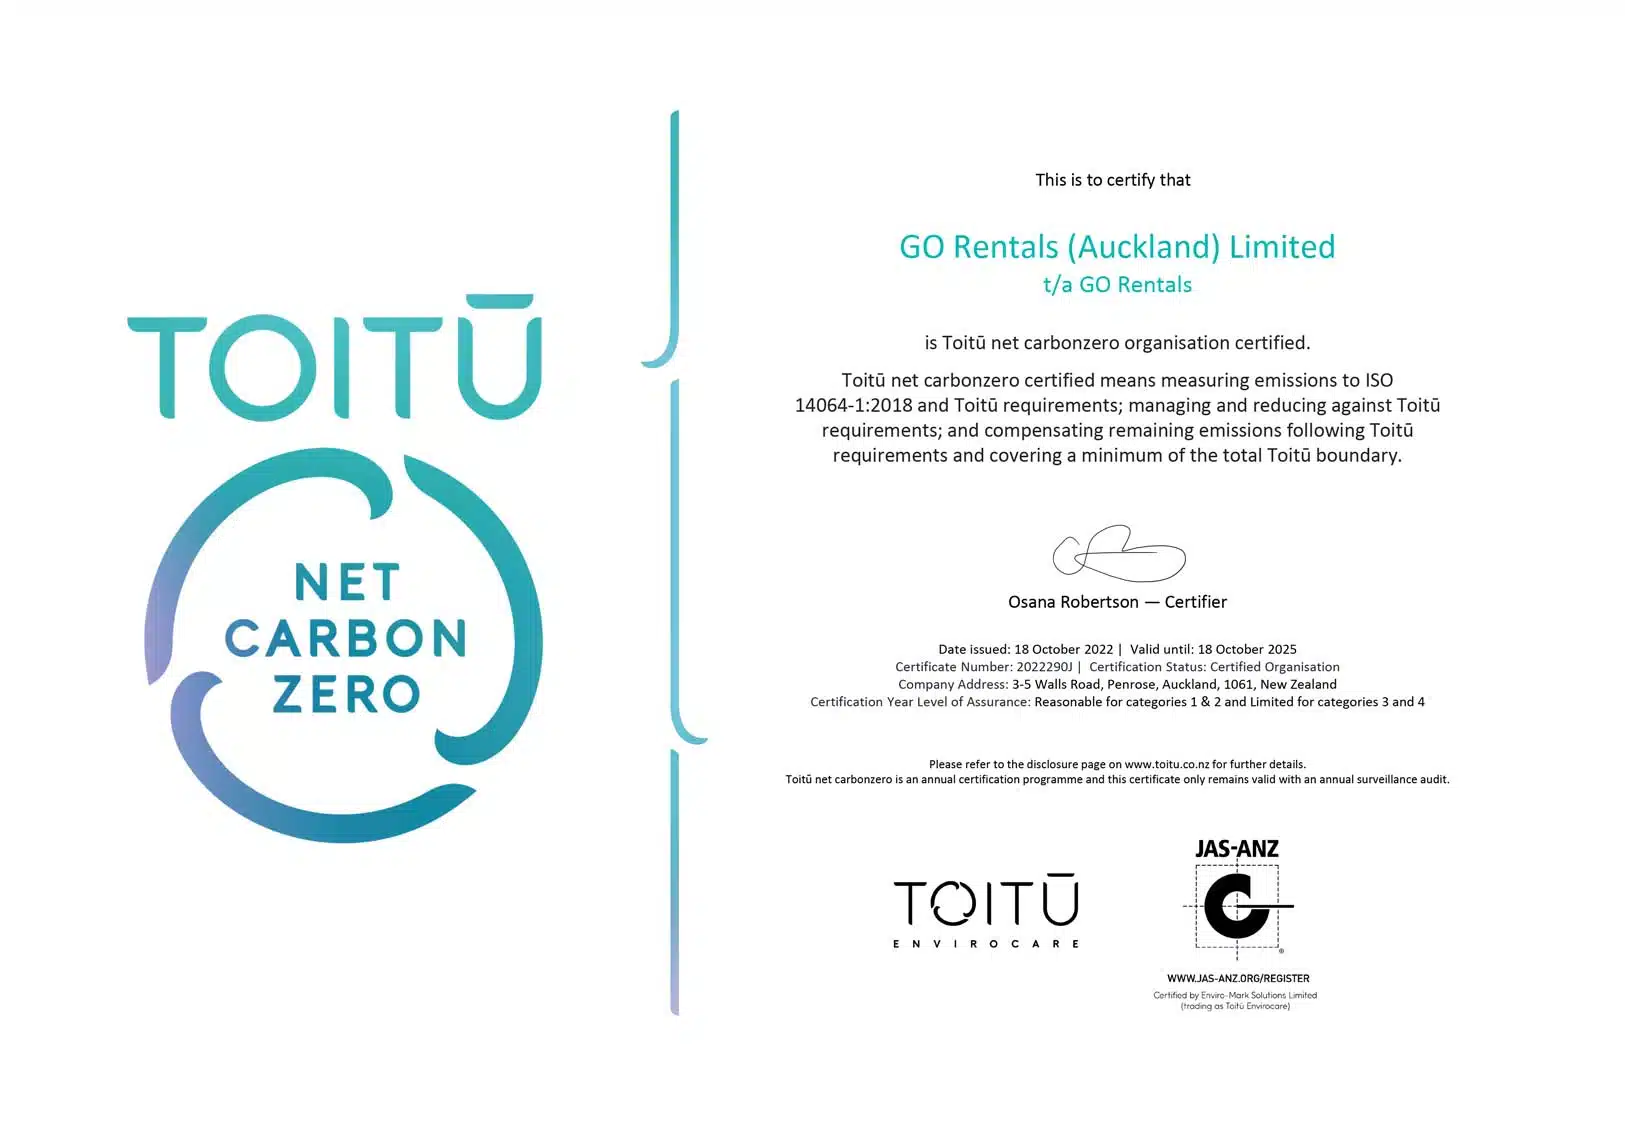 GO Rental's Toitu net carbonzero certificate